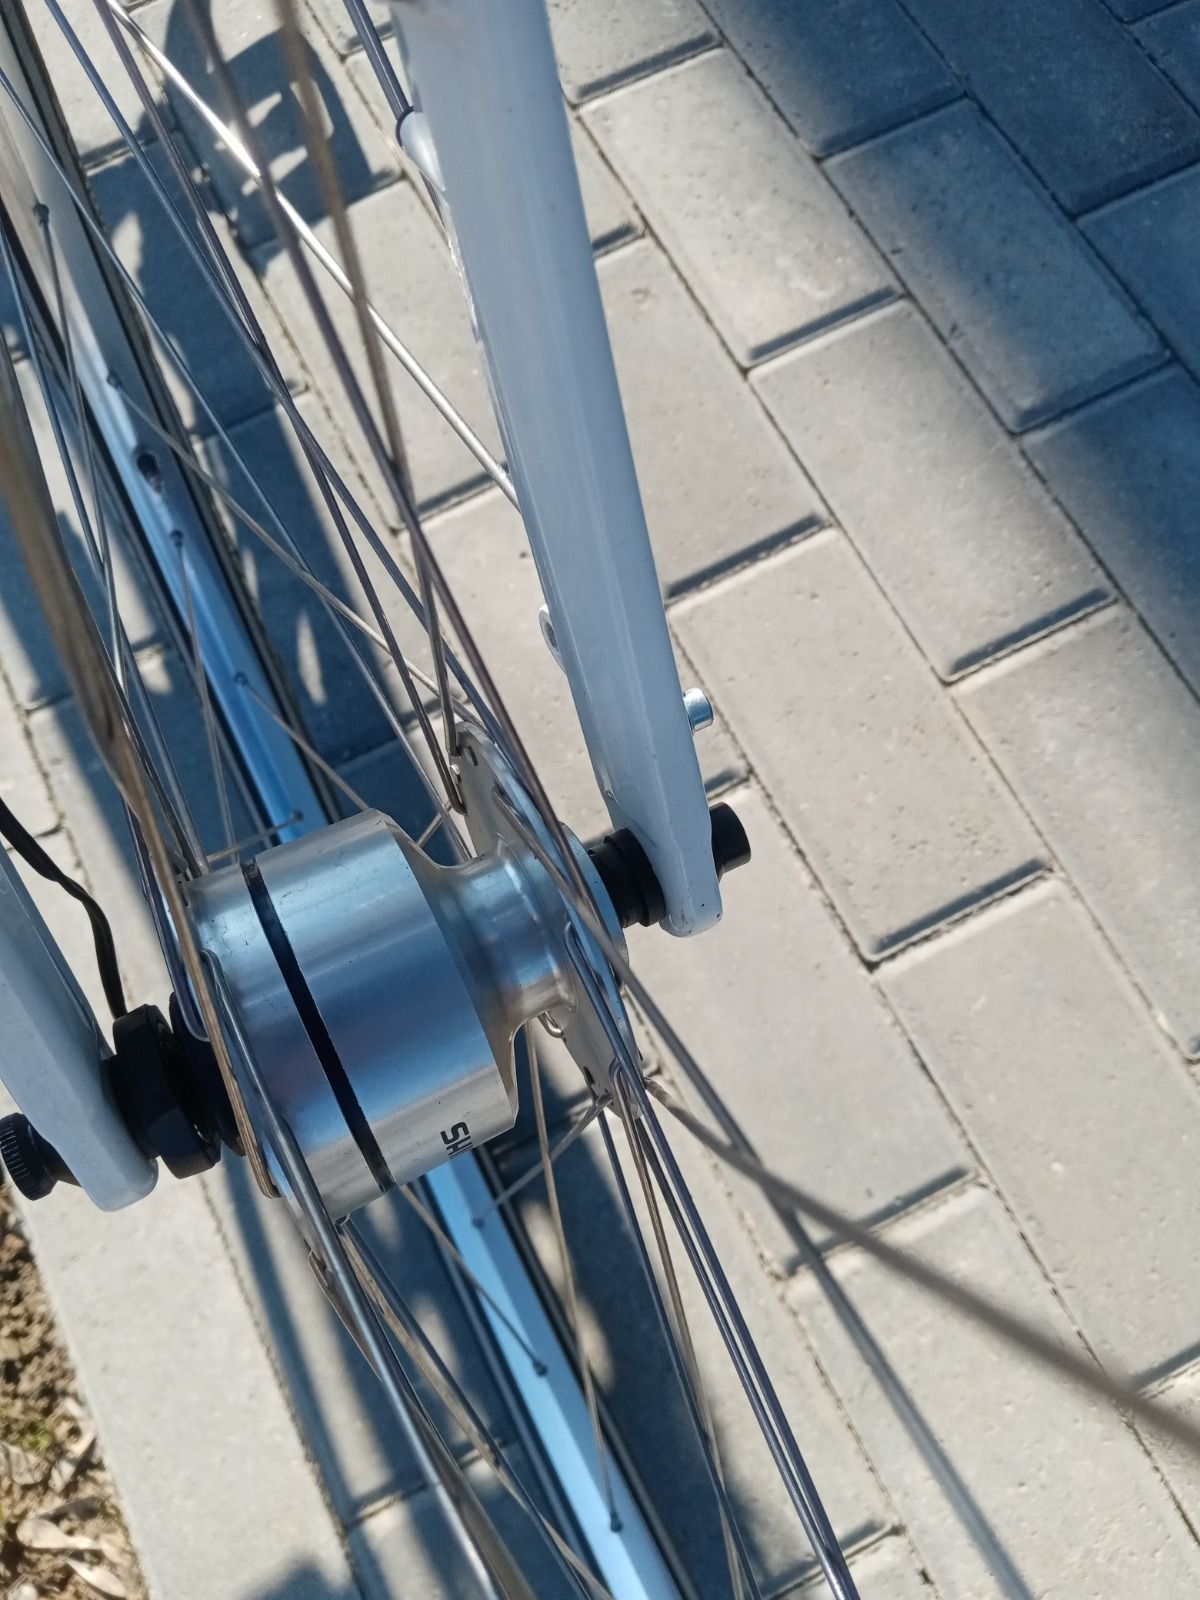 Алюминиевый велосипед из Голландии